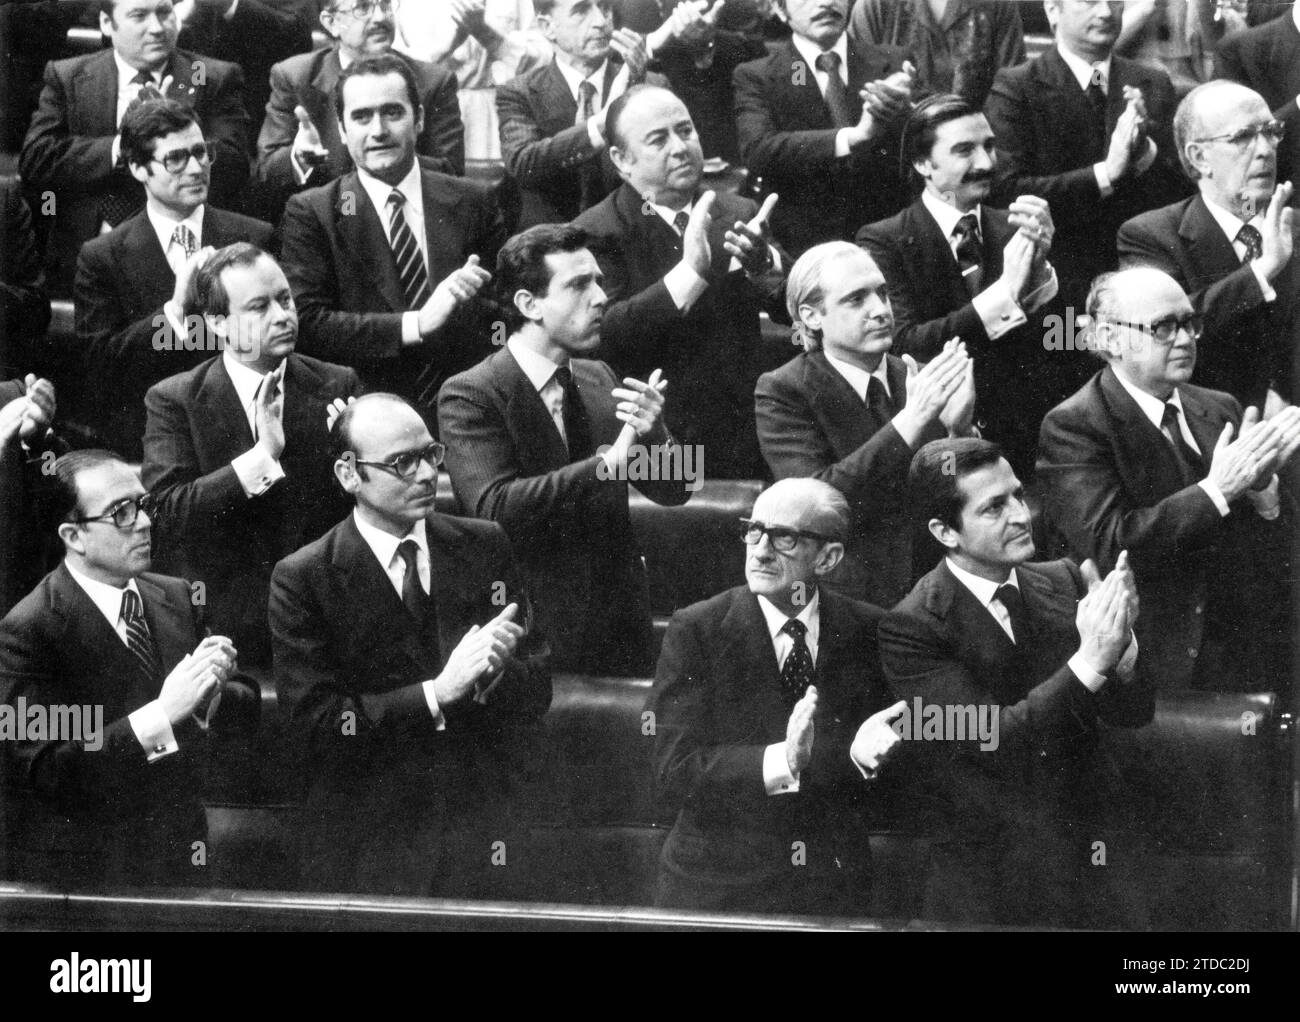 12/26/1978. Cortes - Costituzione - Applausi per il discorso del re. Crediti: Album / Archivo ABC / Teodoro Naranjo Domínguez Foto Stock